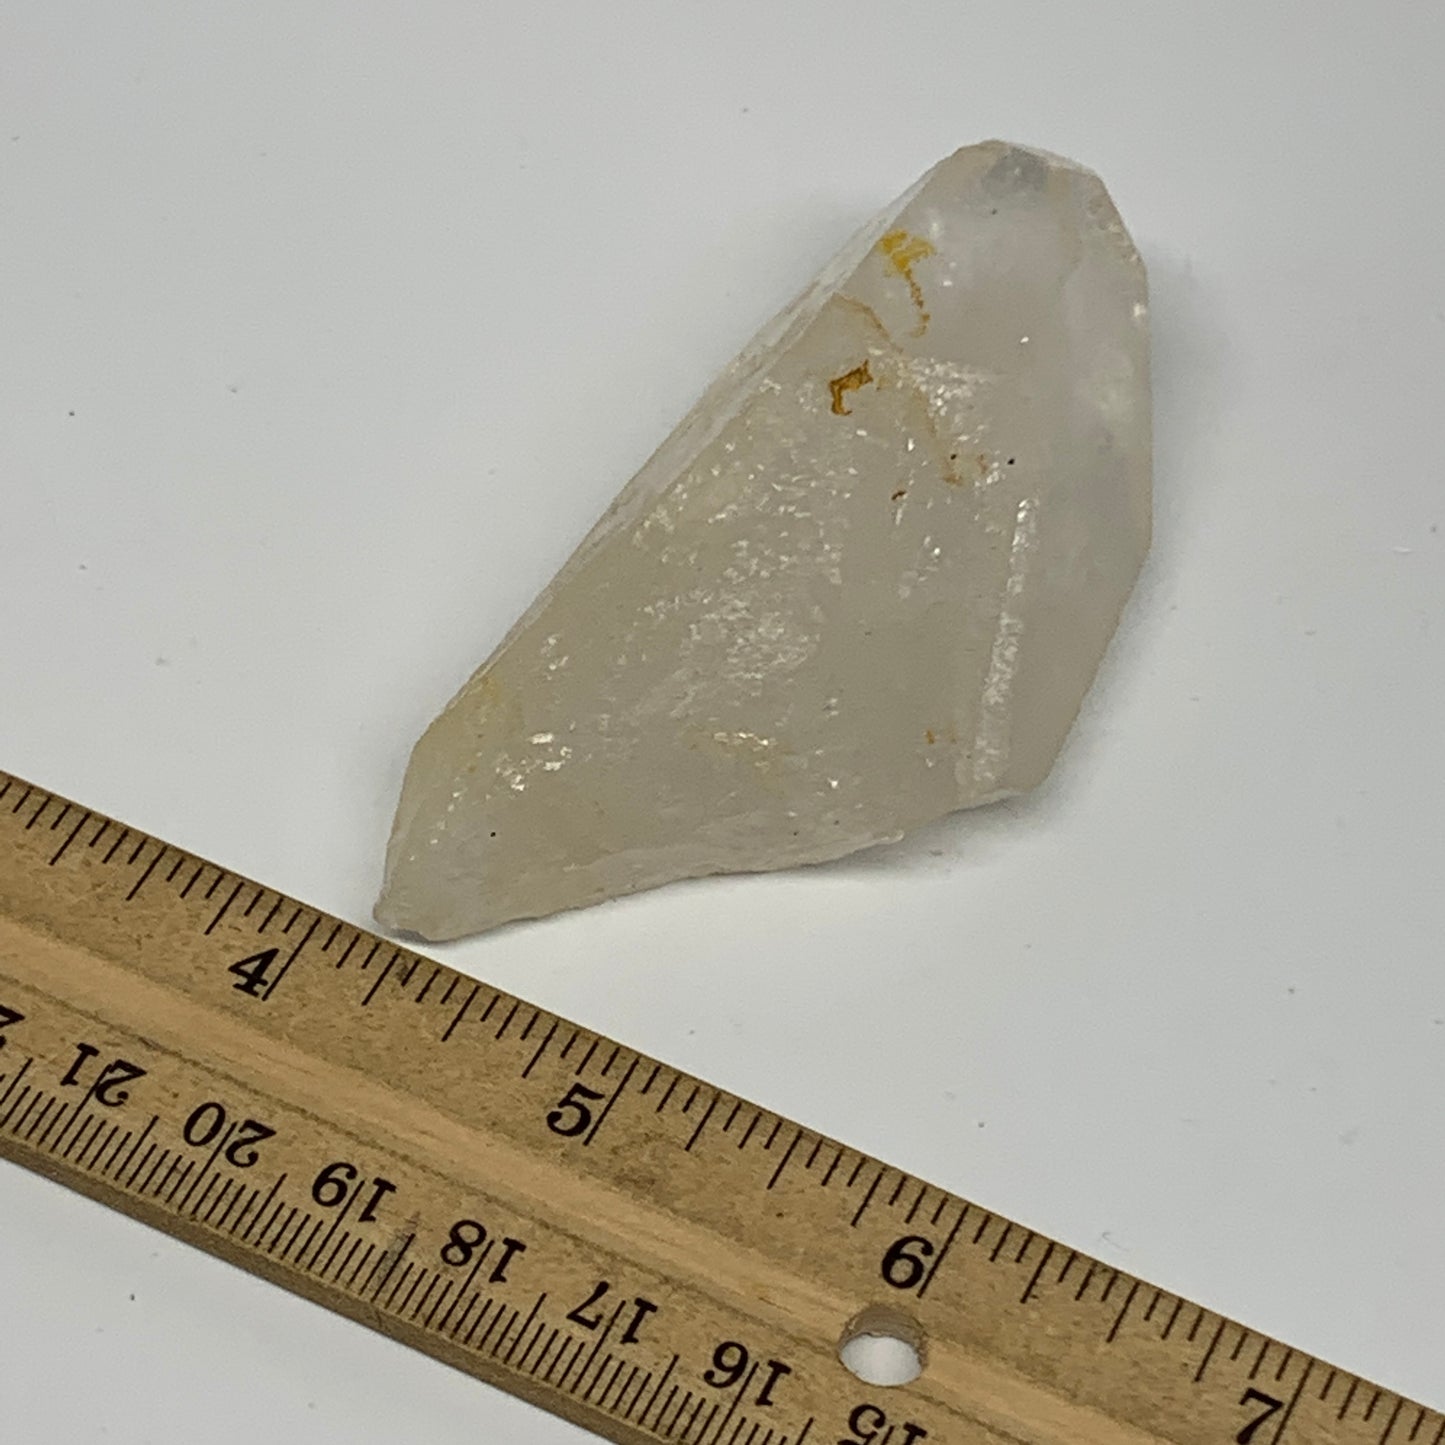 97.8g, 3.3"x1.6"x1.1", Lemurian Quartz Crystal Mineral Specimens @Brazil, B19280